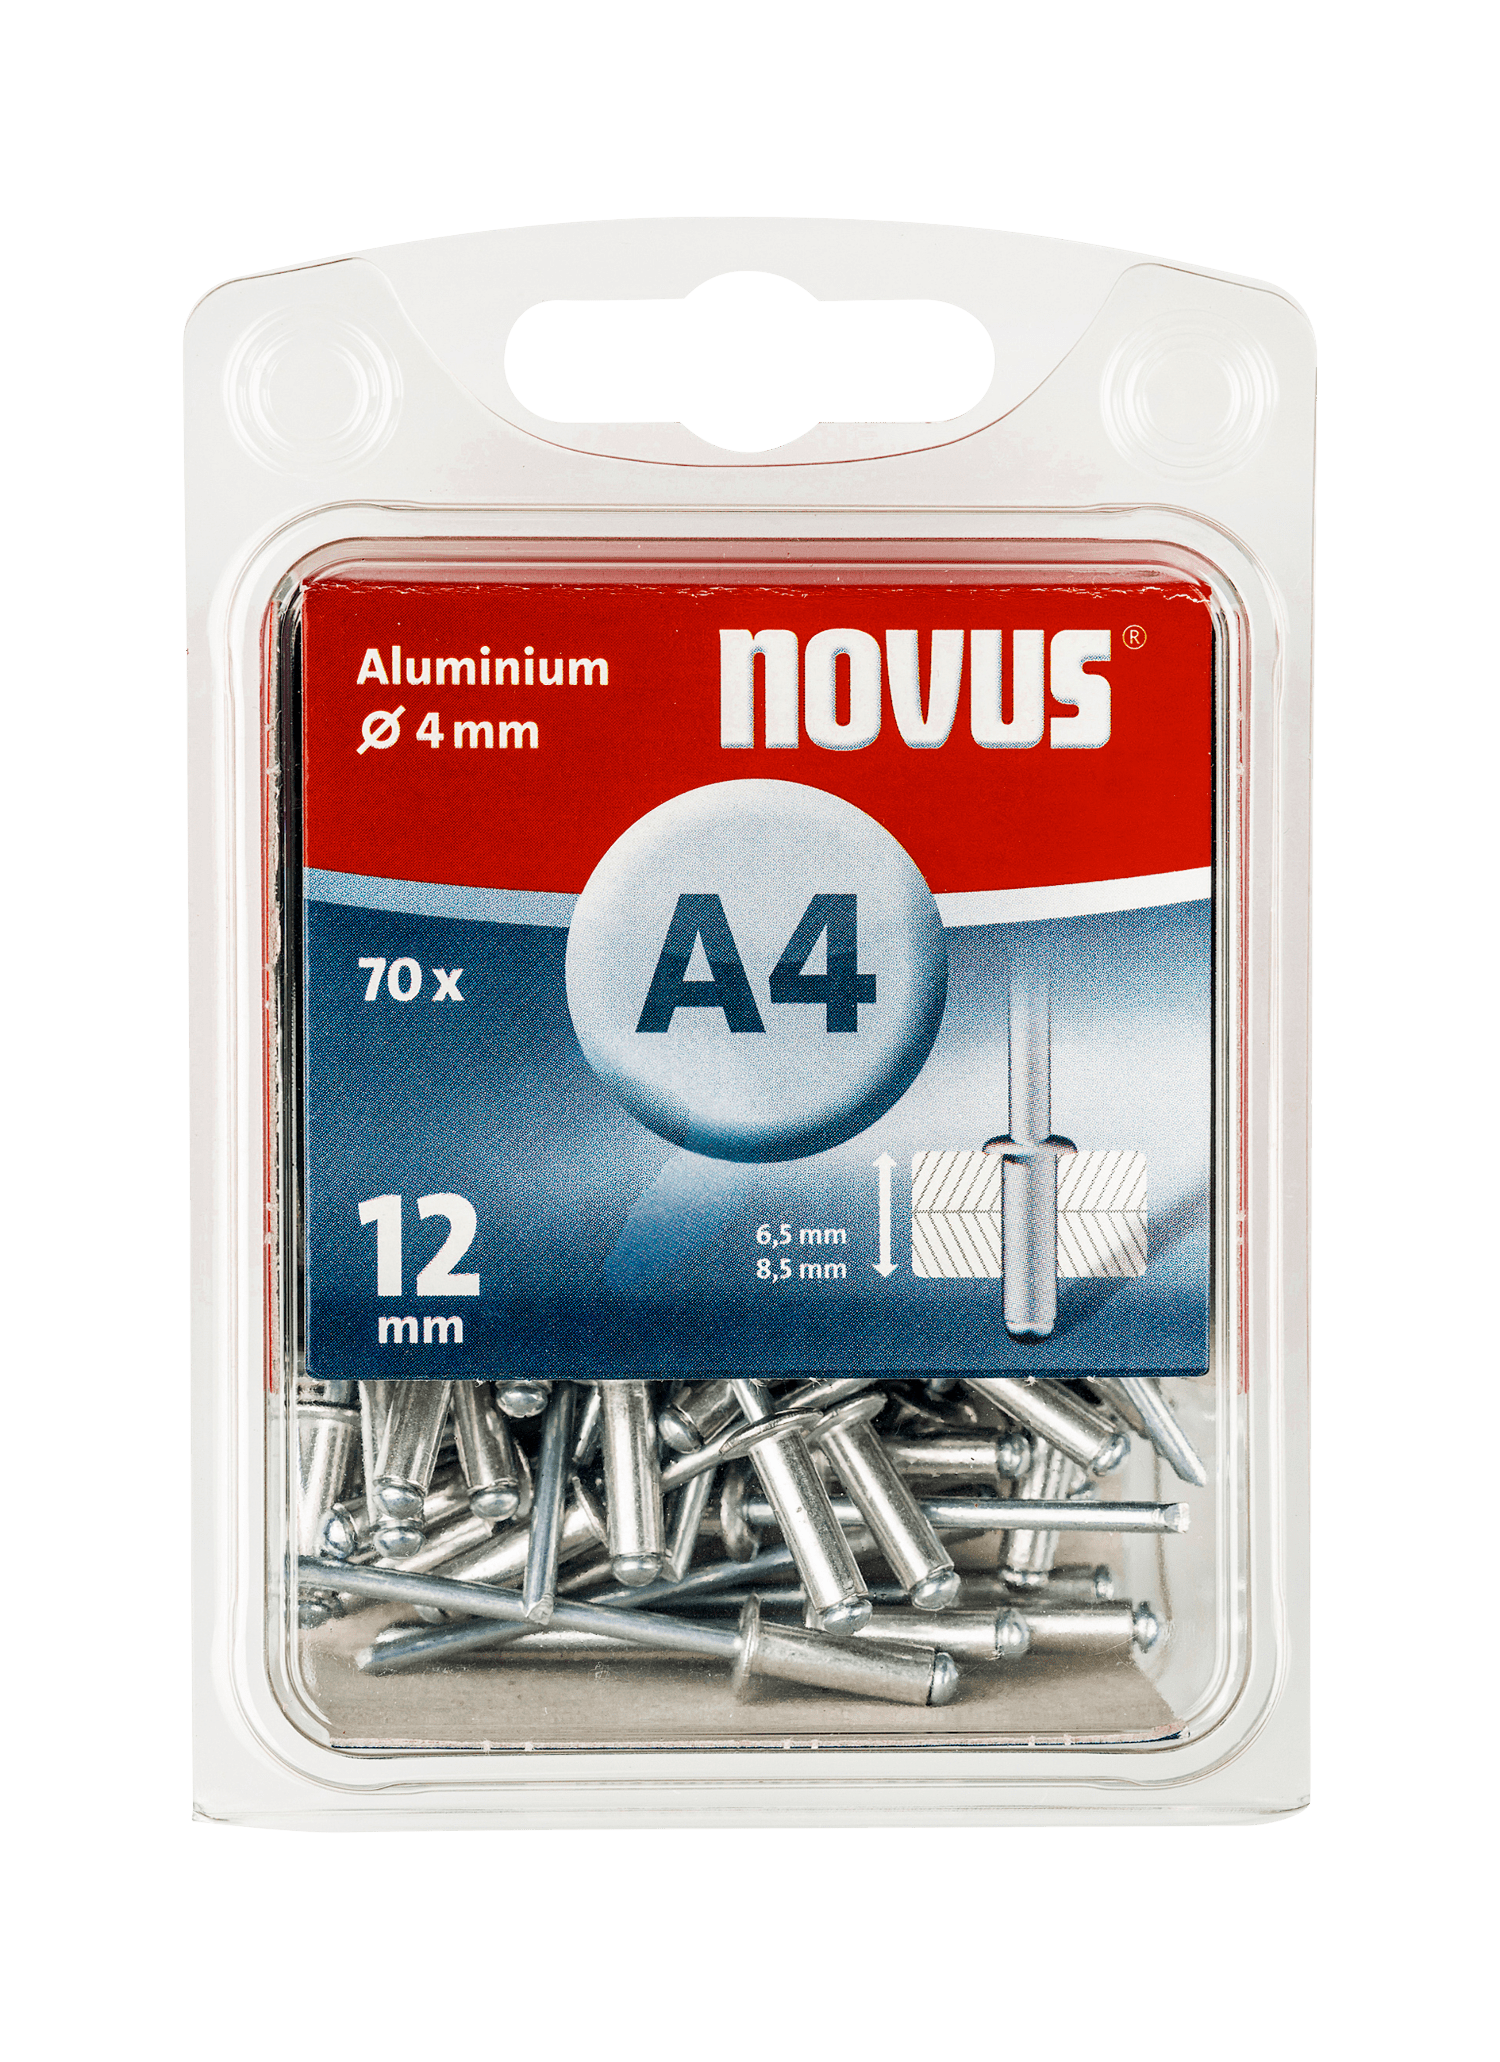 NOVUS aluminium blind rivet